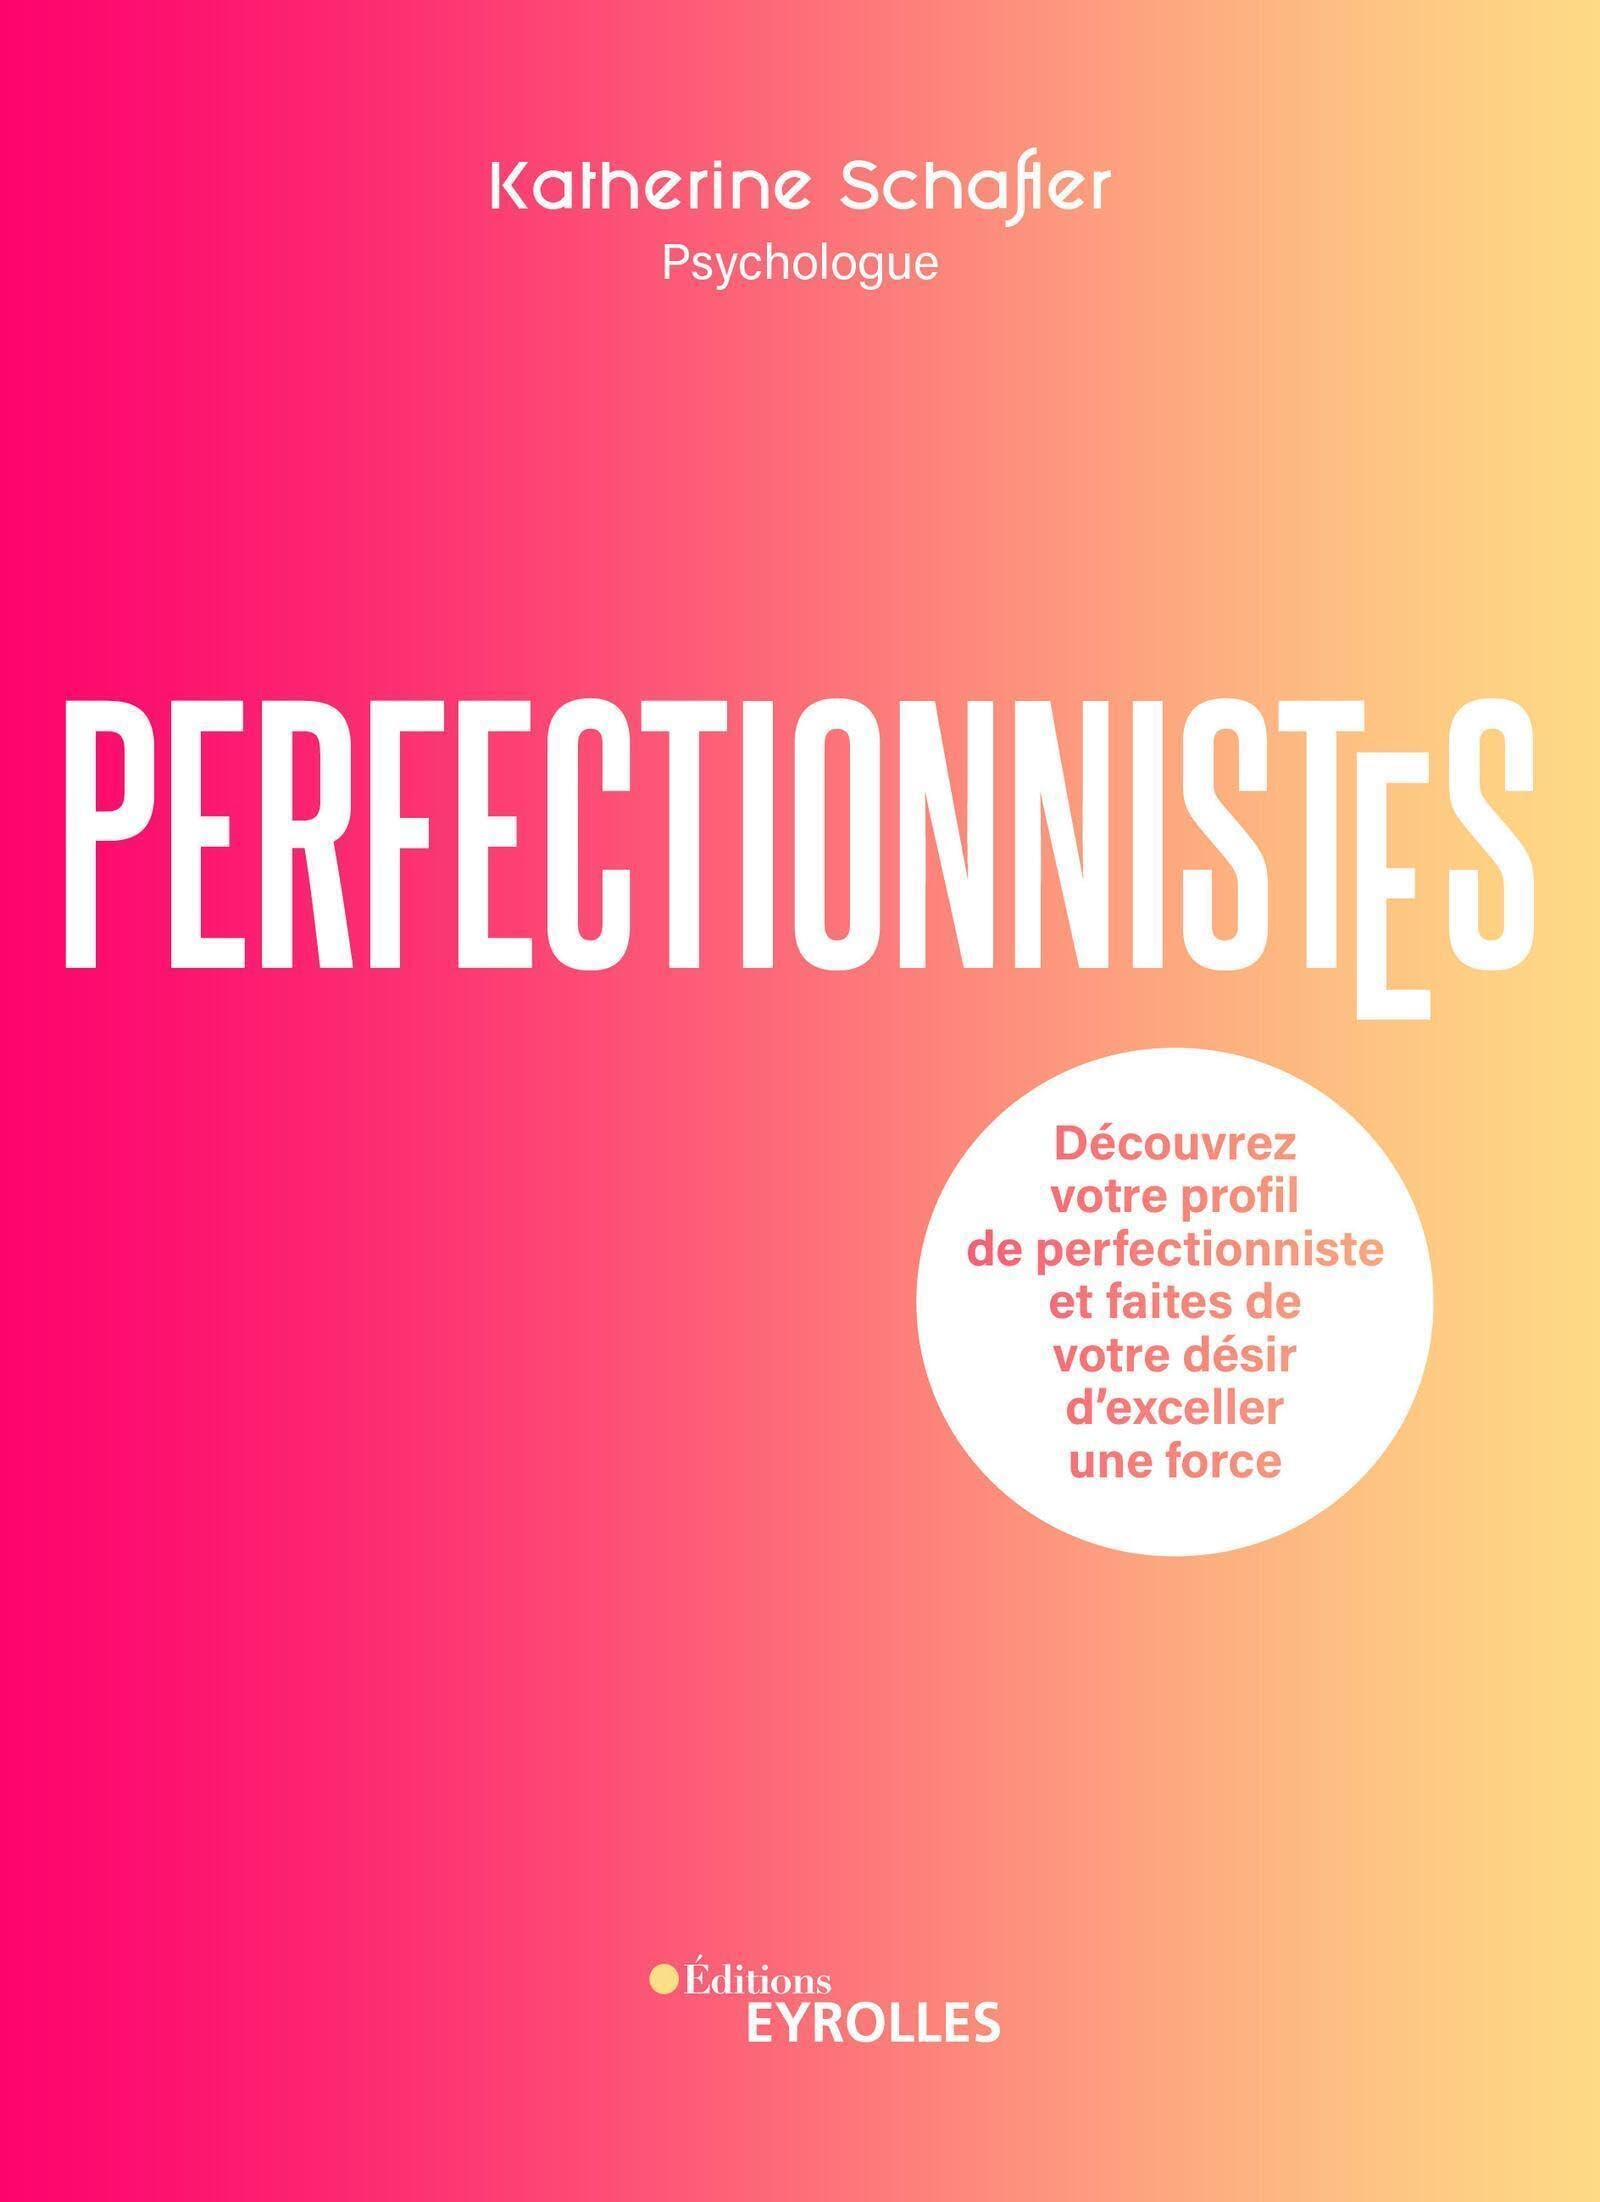 Perfectionnistes : découvrez votre profil de perfectionniste et faites de votre désir d'exceller une